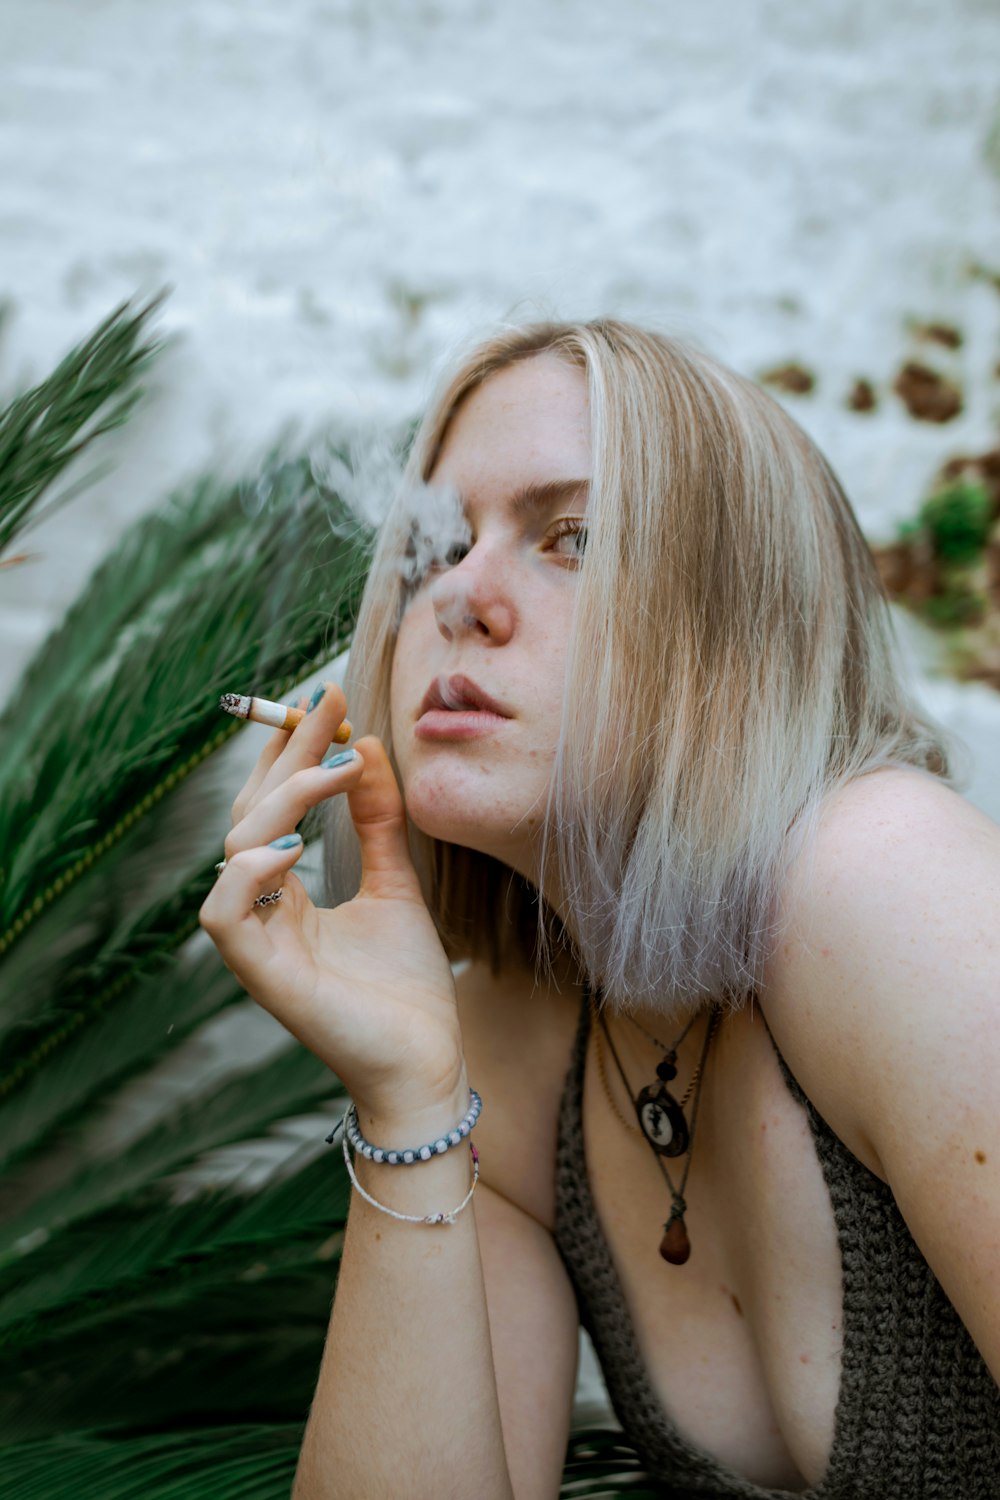 a woman smoking a cigarette next to a palm tree